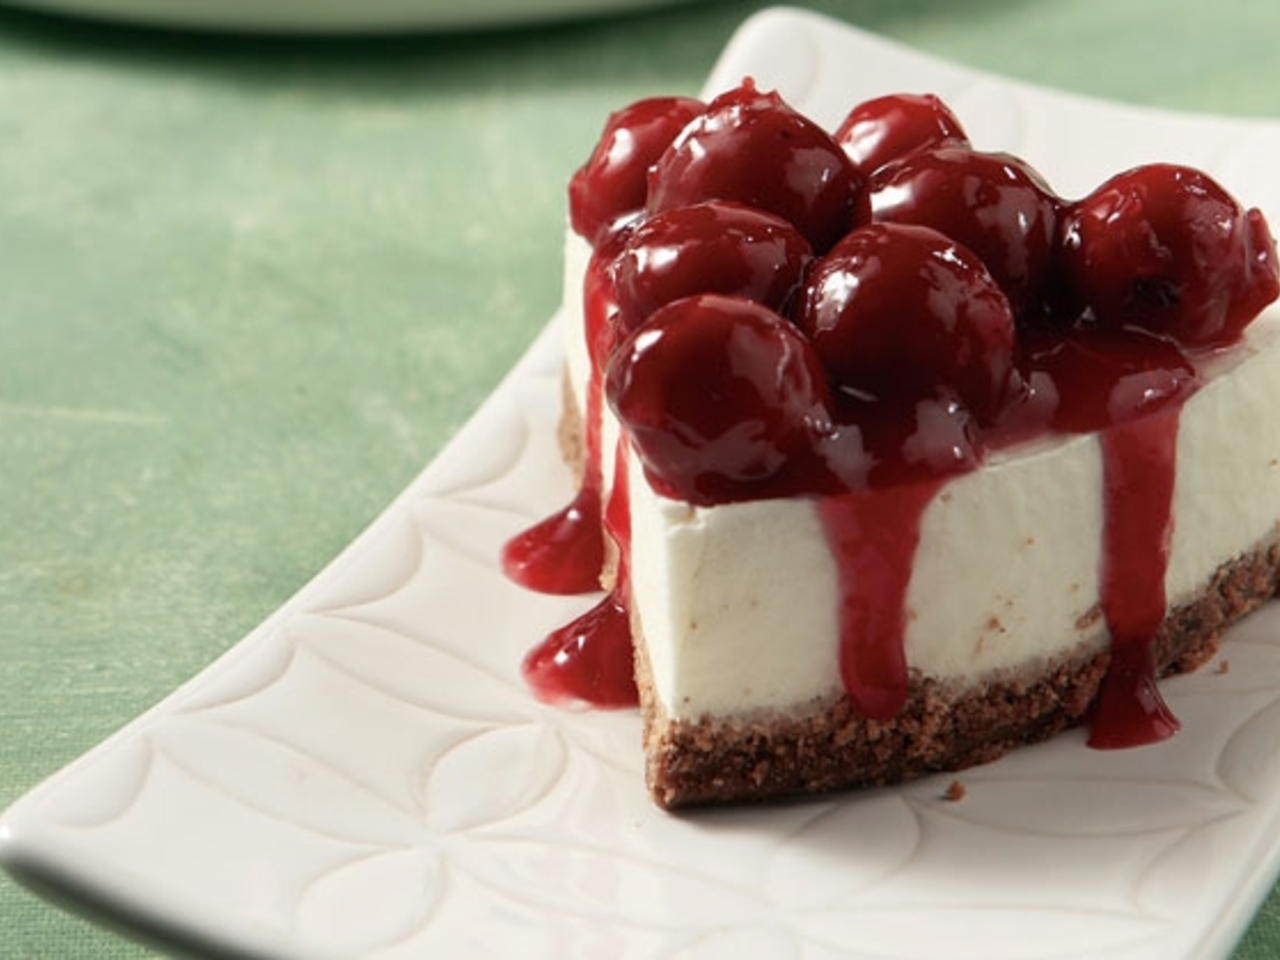 Εύκολο cheesecake χωρίς ψήσιμο, που γίνεται σε 5 λεπτά